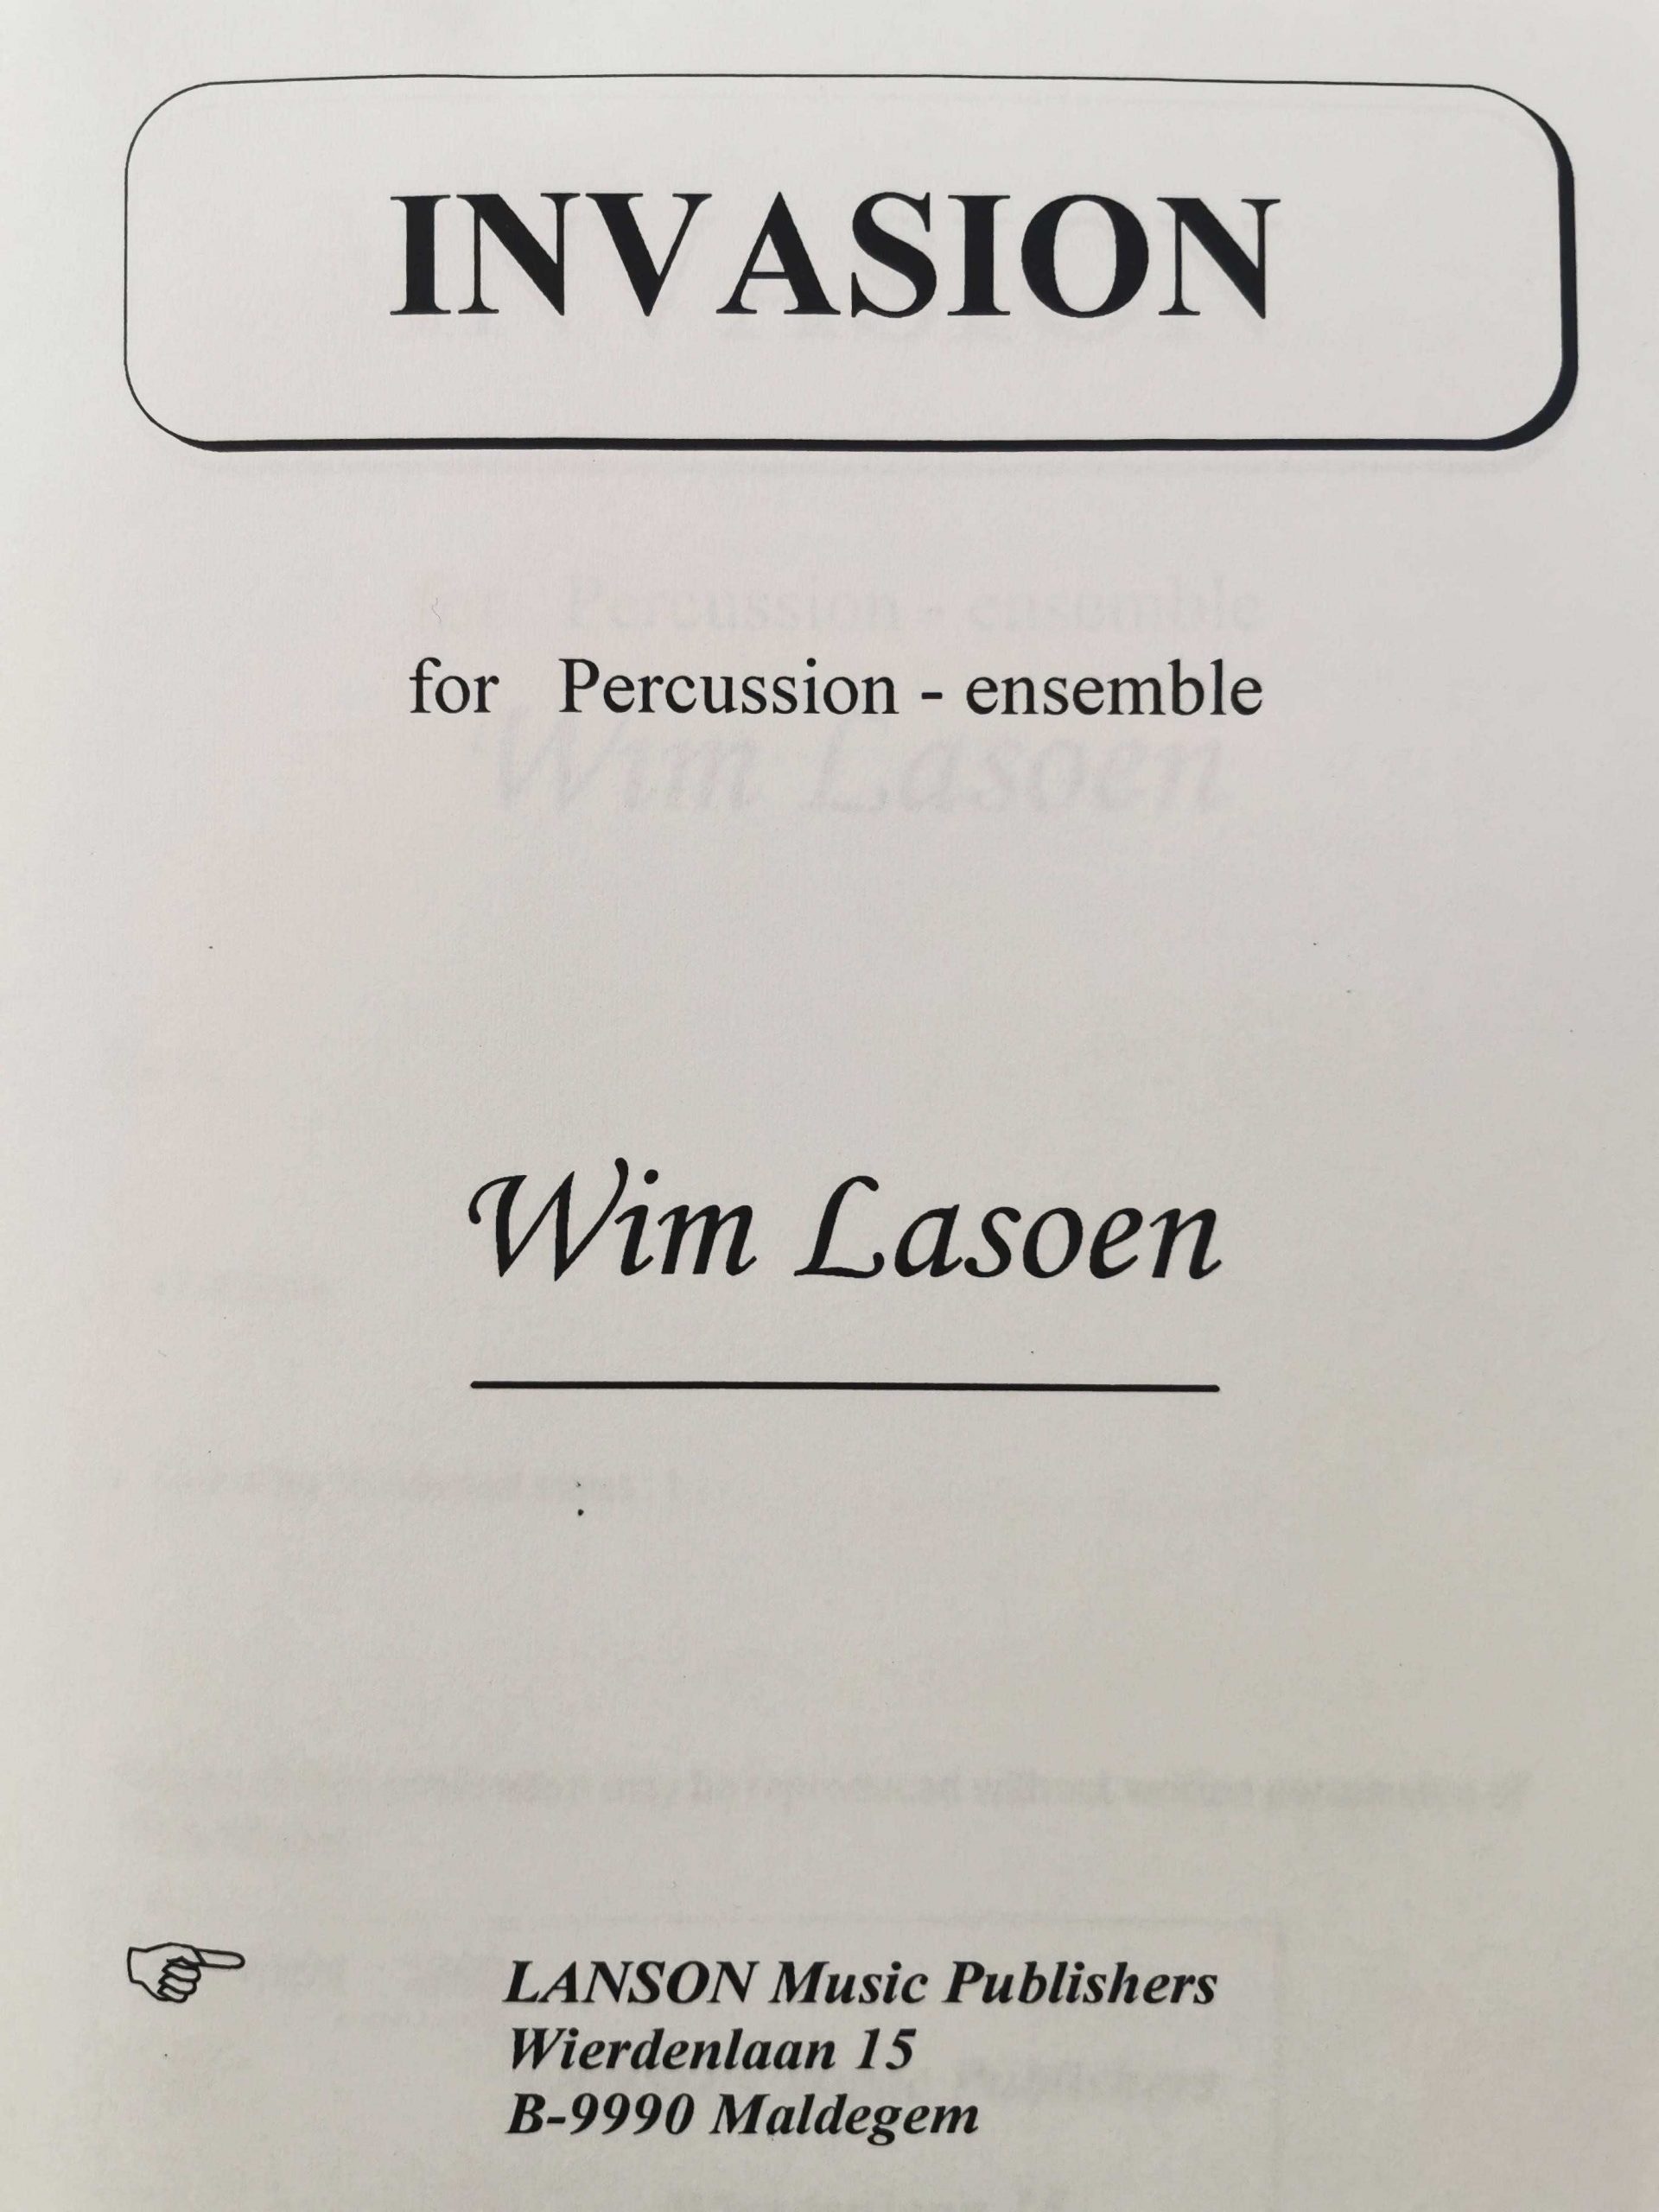 Invasion by Wim Lasoen